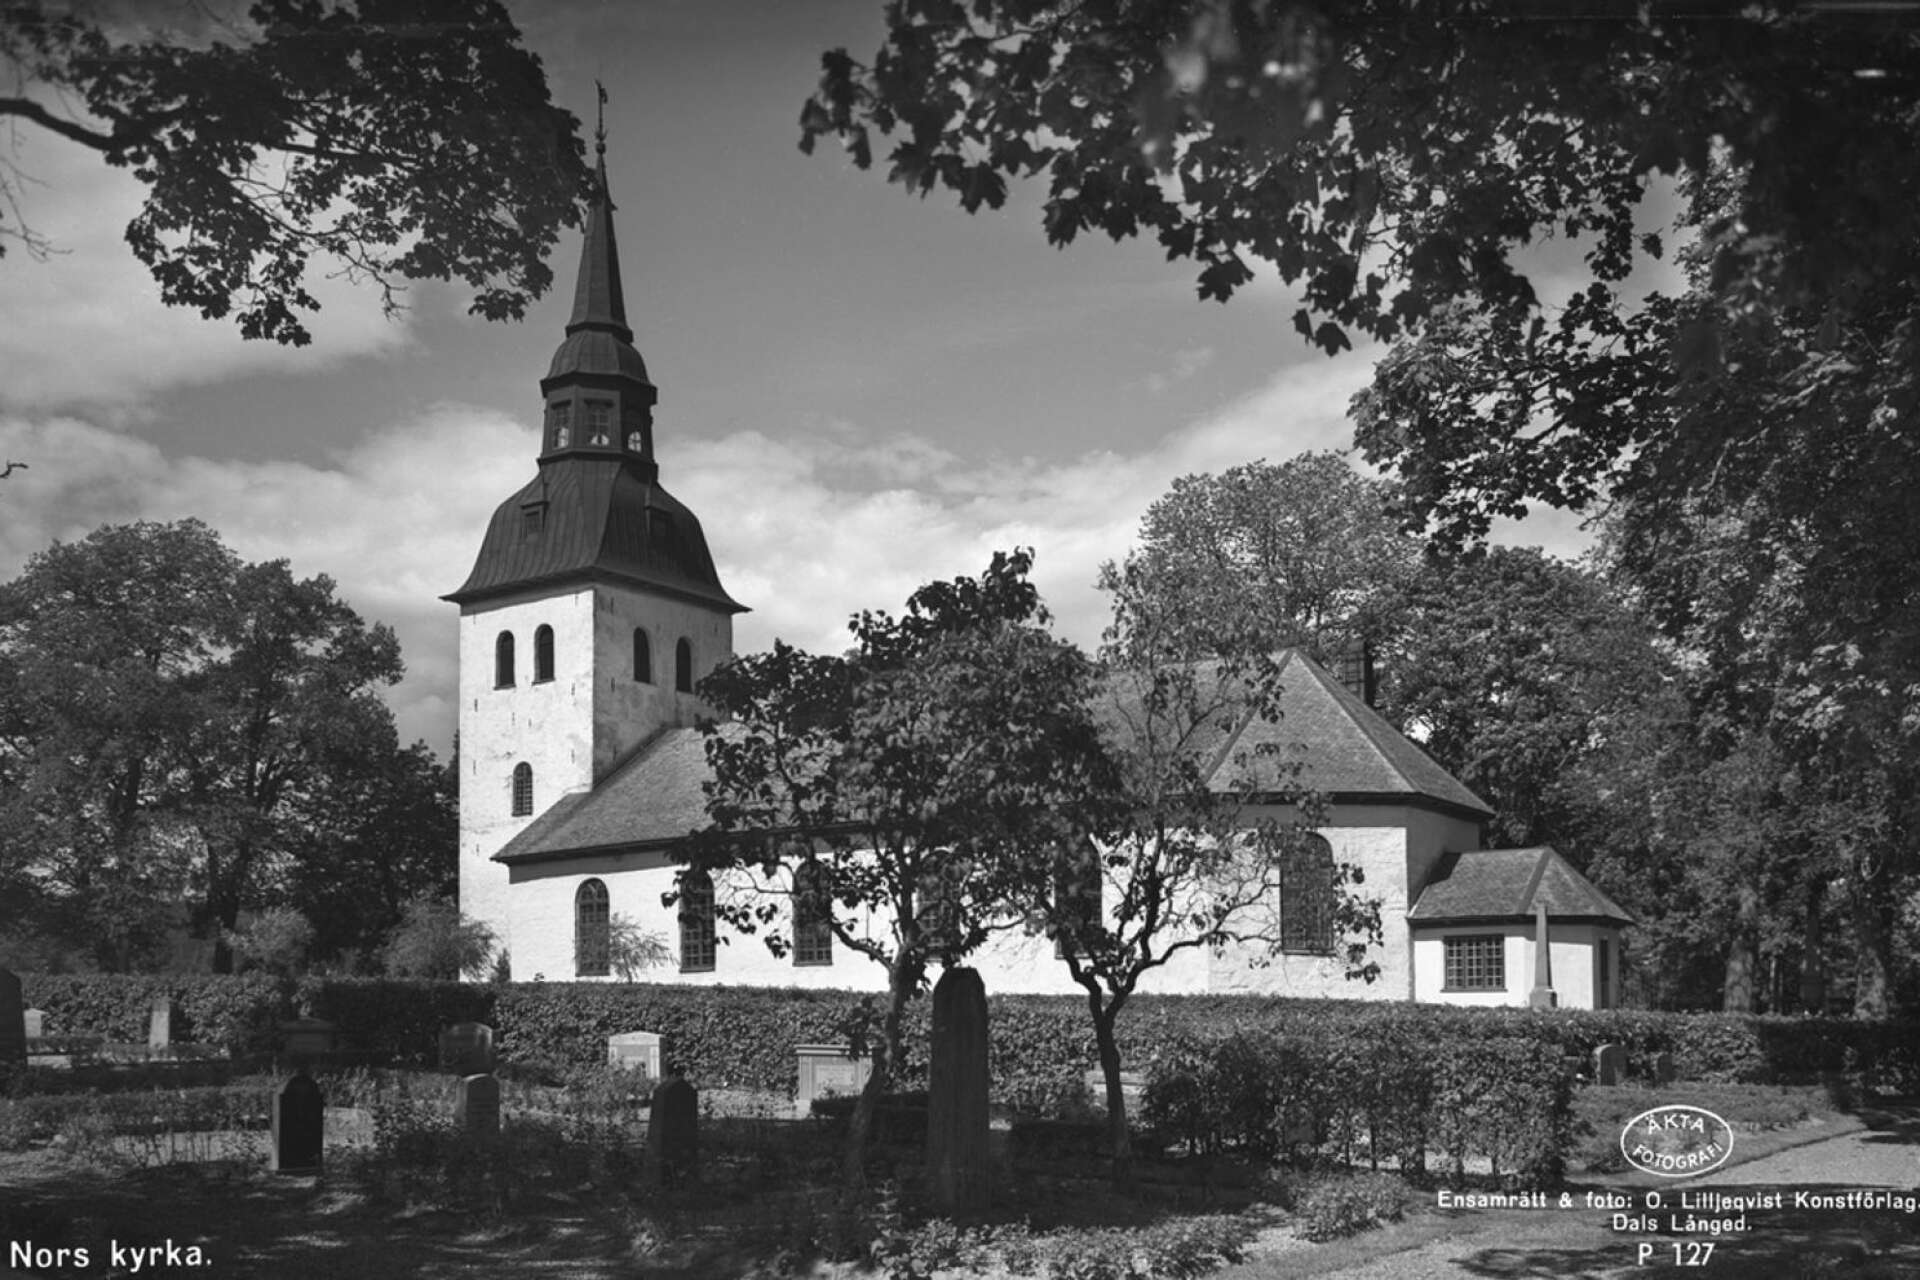 Nors kyrka i Vålberg byggdes på medeltiden i sten och låg norr om nuvarande plats, närmare Norsälven. Dagens kyrkobyggnad uppfördes 1796–1798 efter ritningar av arkitekterna Johan Georg Reincke och Jacob Wulff. Även här har renoveringar och tillbyggnader skett i omgångar. Bilden är tagen 1956.